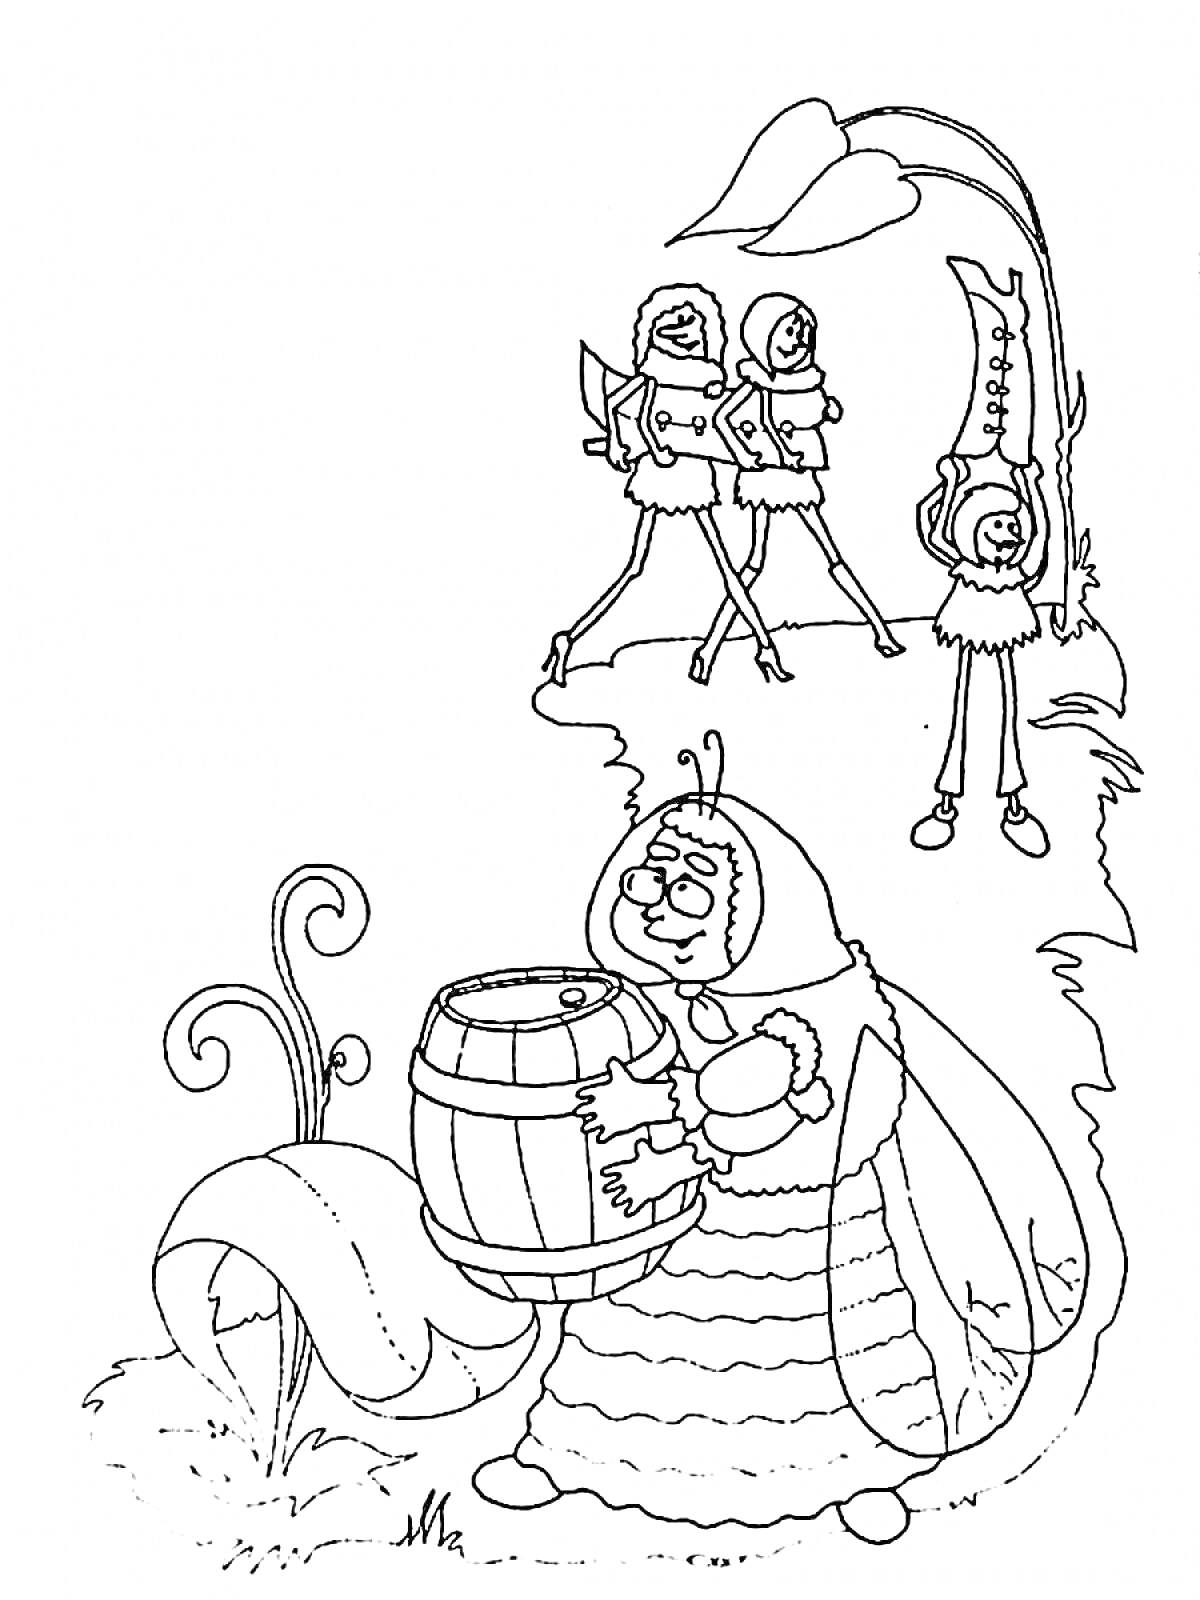 Муха-Цокотуха с самоваром, три встречающих стрекозы, высокое растение